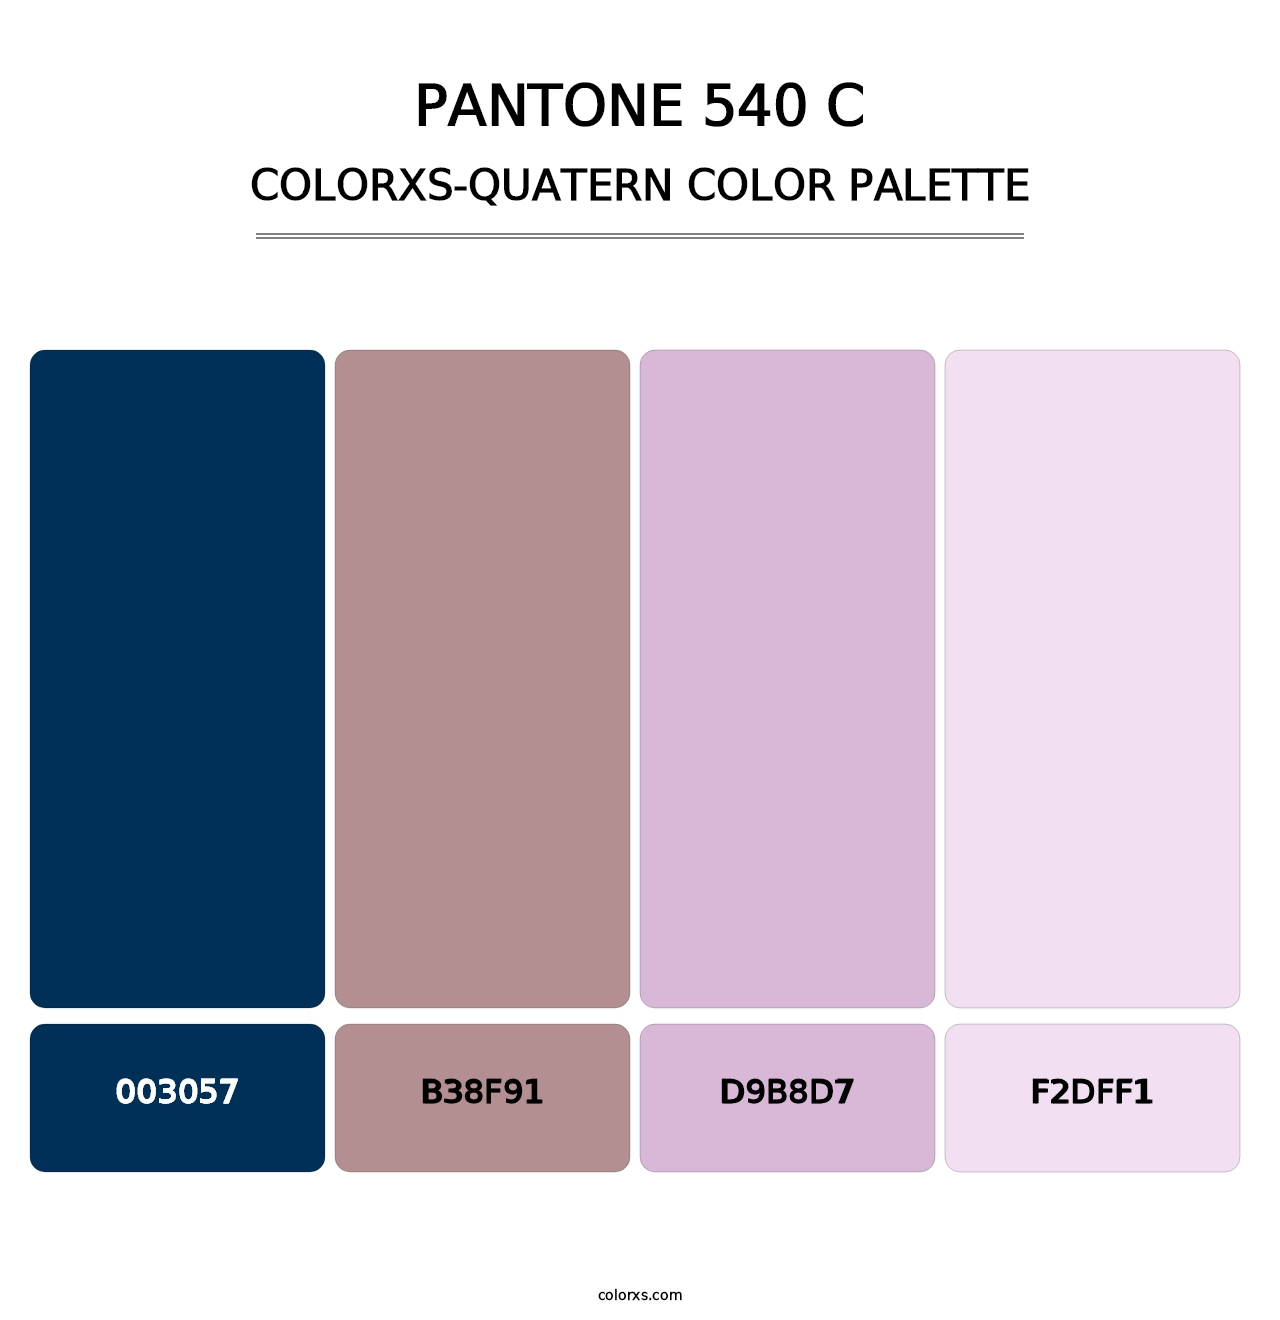 PANTONE 540 C - Colorxs Quatern Palette